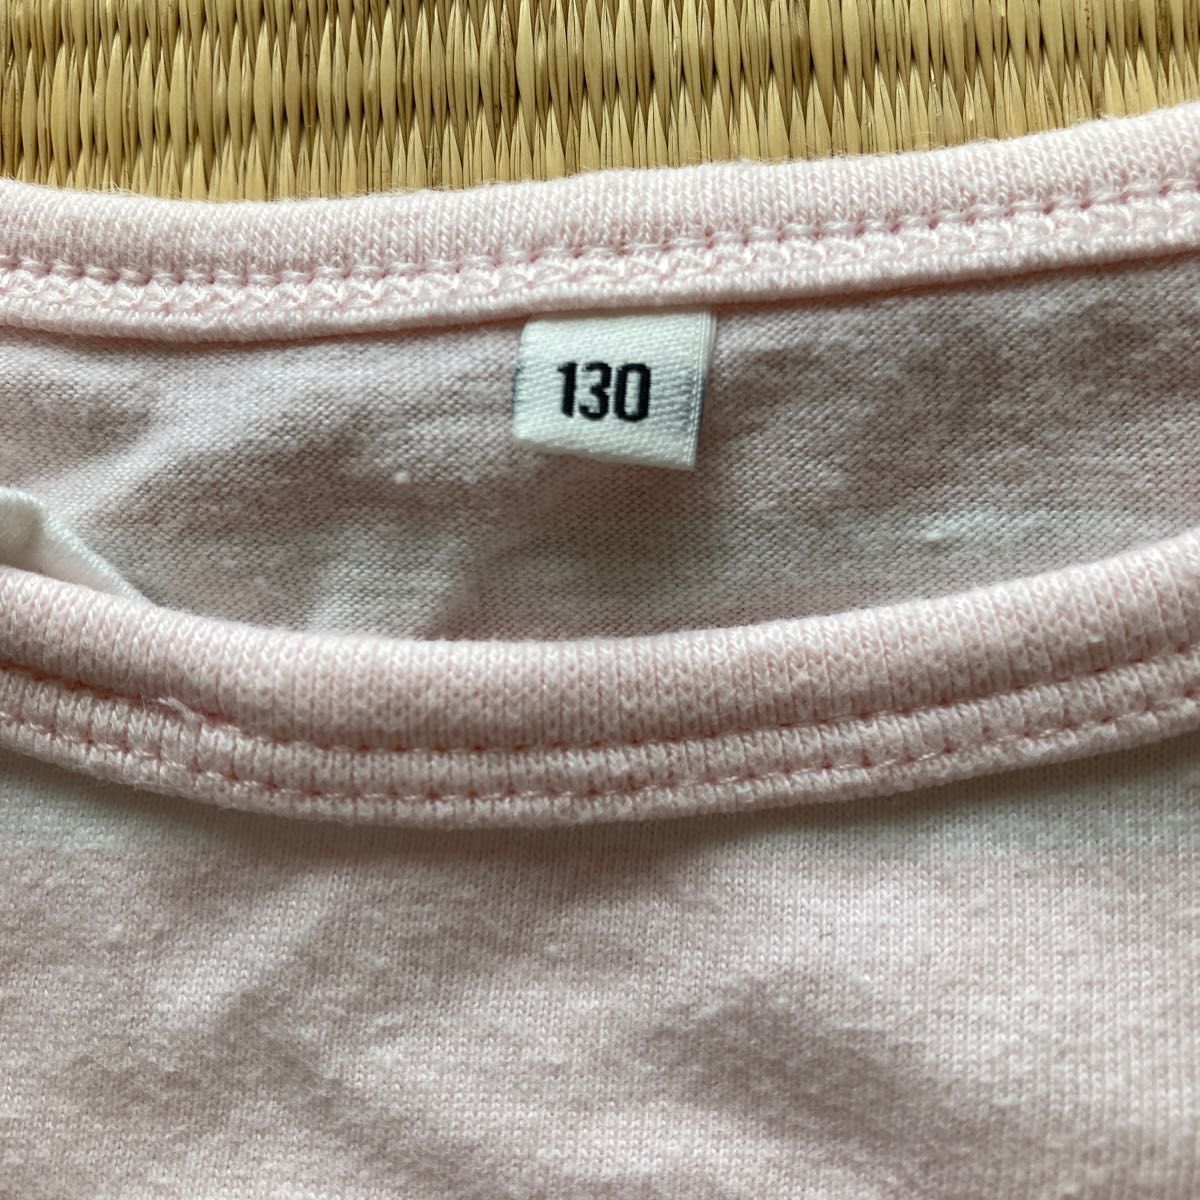 キッズ女児用長袖Tシャツ130サイズ。身丈約43cm、ピンクと白のボーダー。サイズアウト品です。綿100%、西松屋チェーン製です。